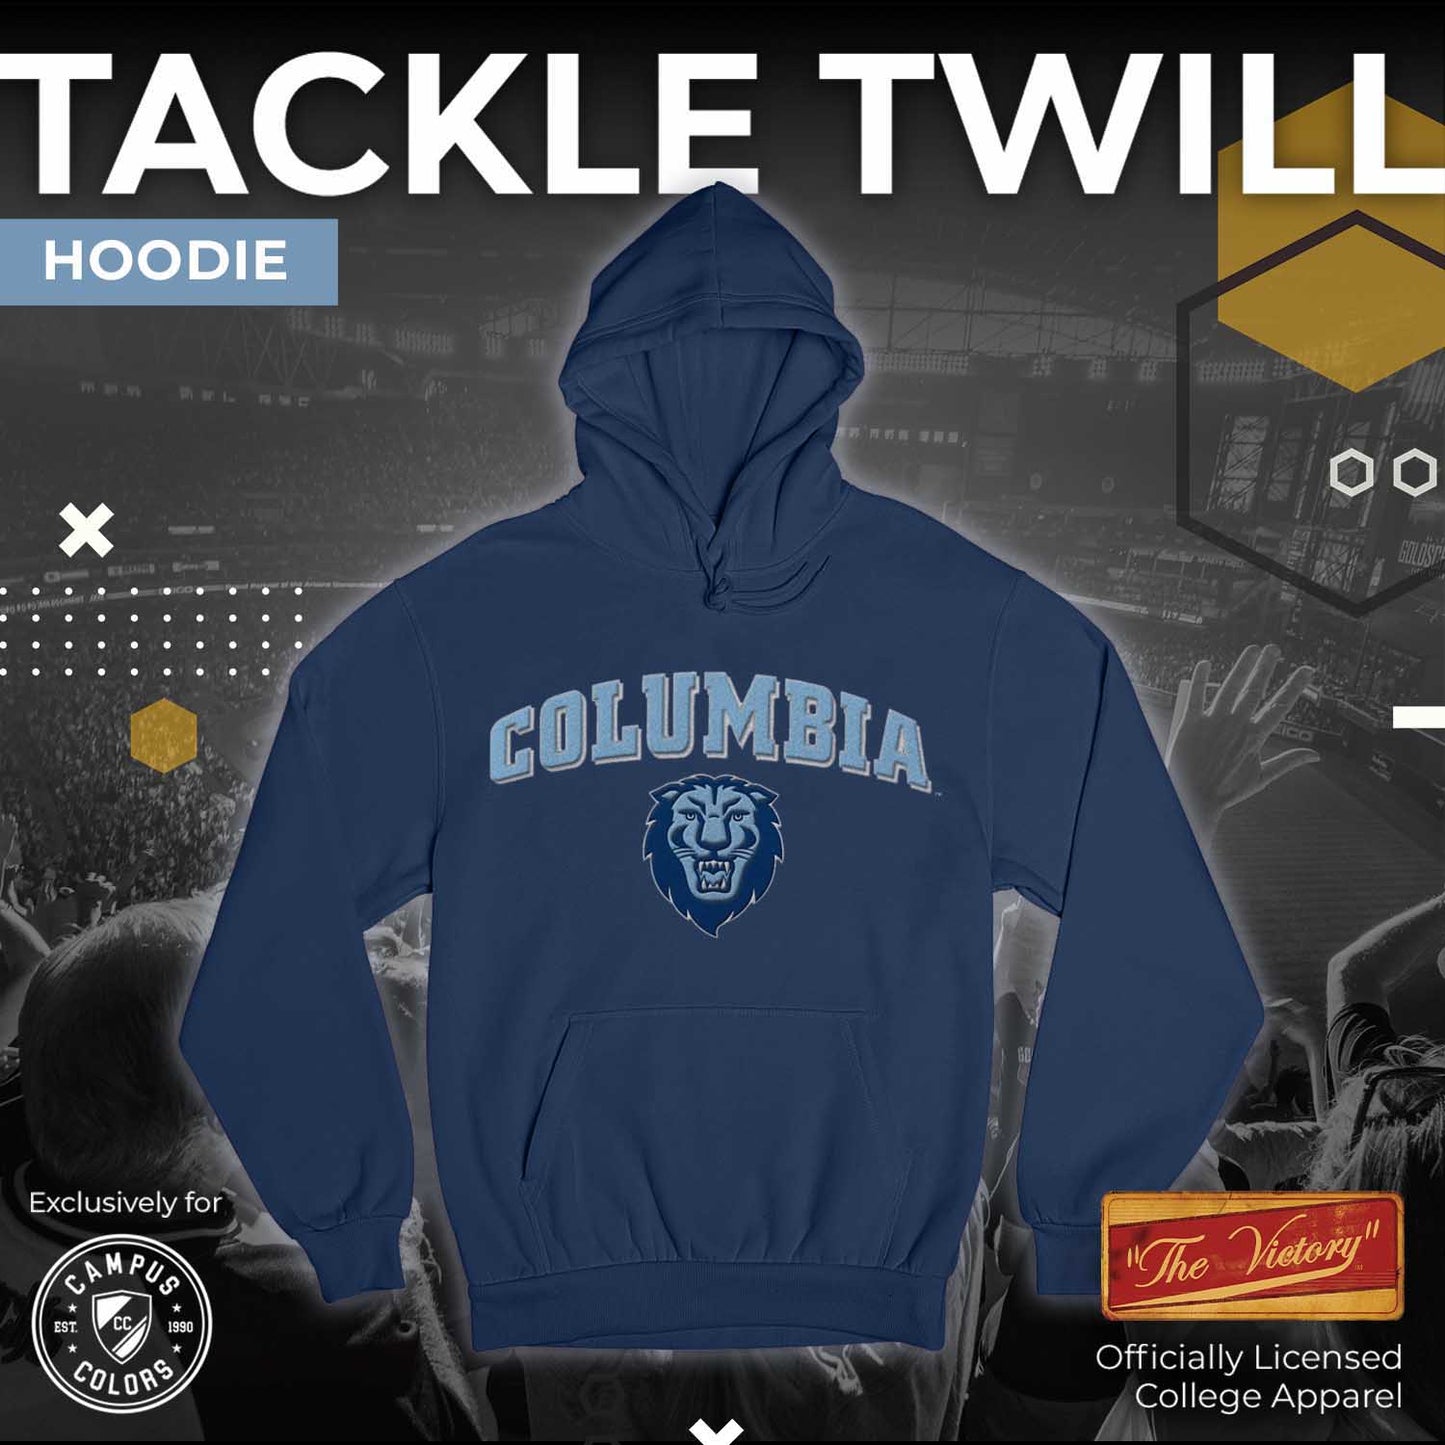 Columbia Lions NCAA Adult Tackle Twill Hooded Sweatshirt - Navy